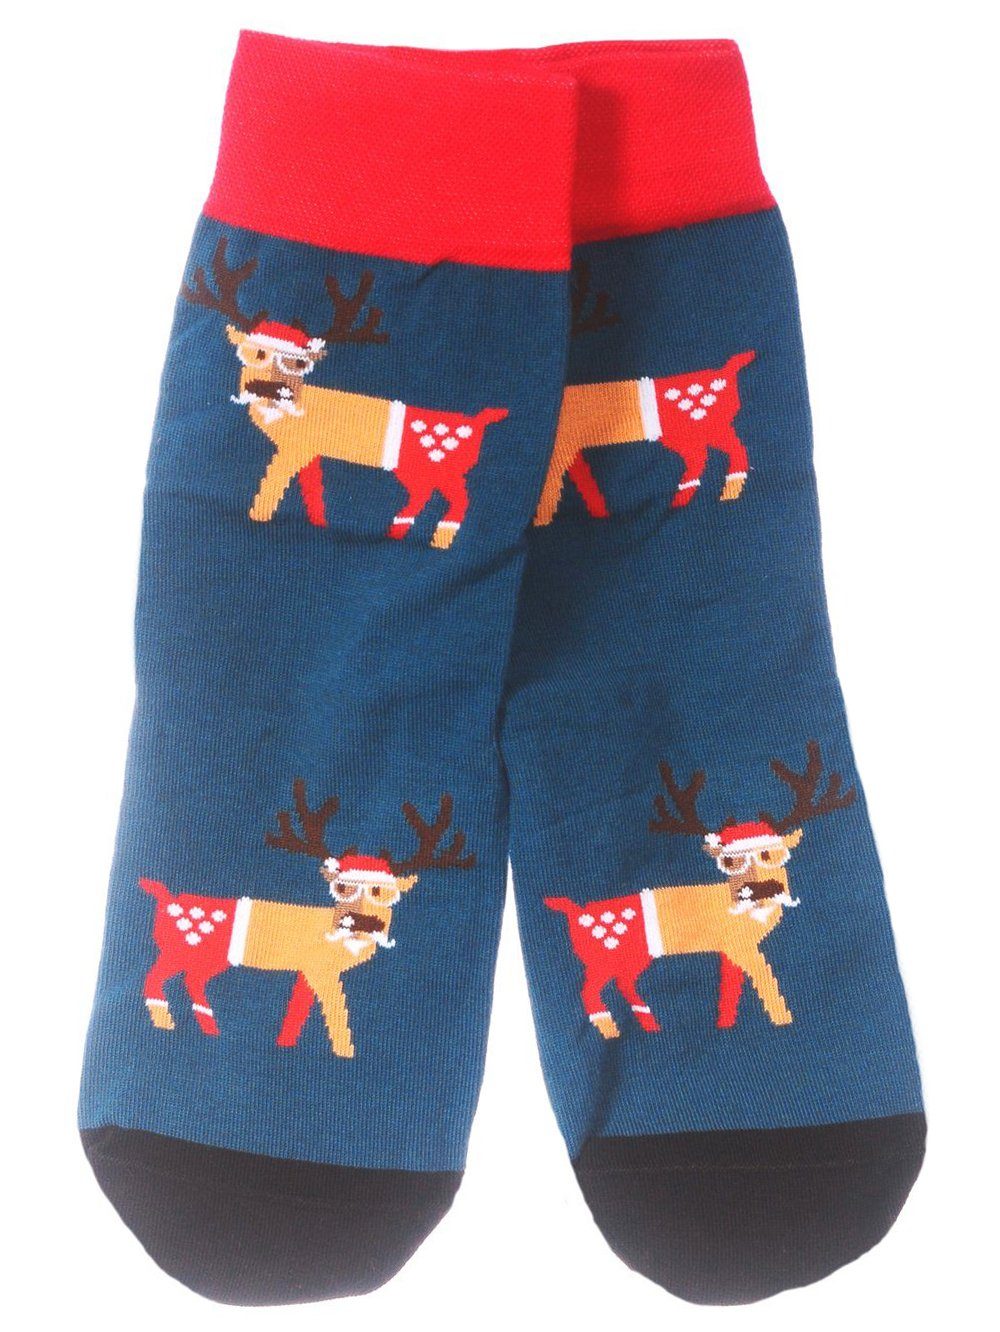 Martinex Socken Freizeitsocken 1 Paar Socken Strümpfe 35 38 39 42 43 46 Weihnachtssocken, festlich, weihnachtlich, für die ganze Familie